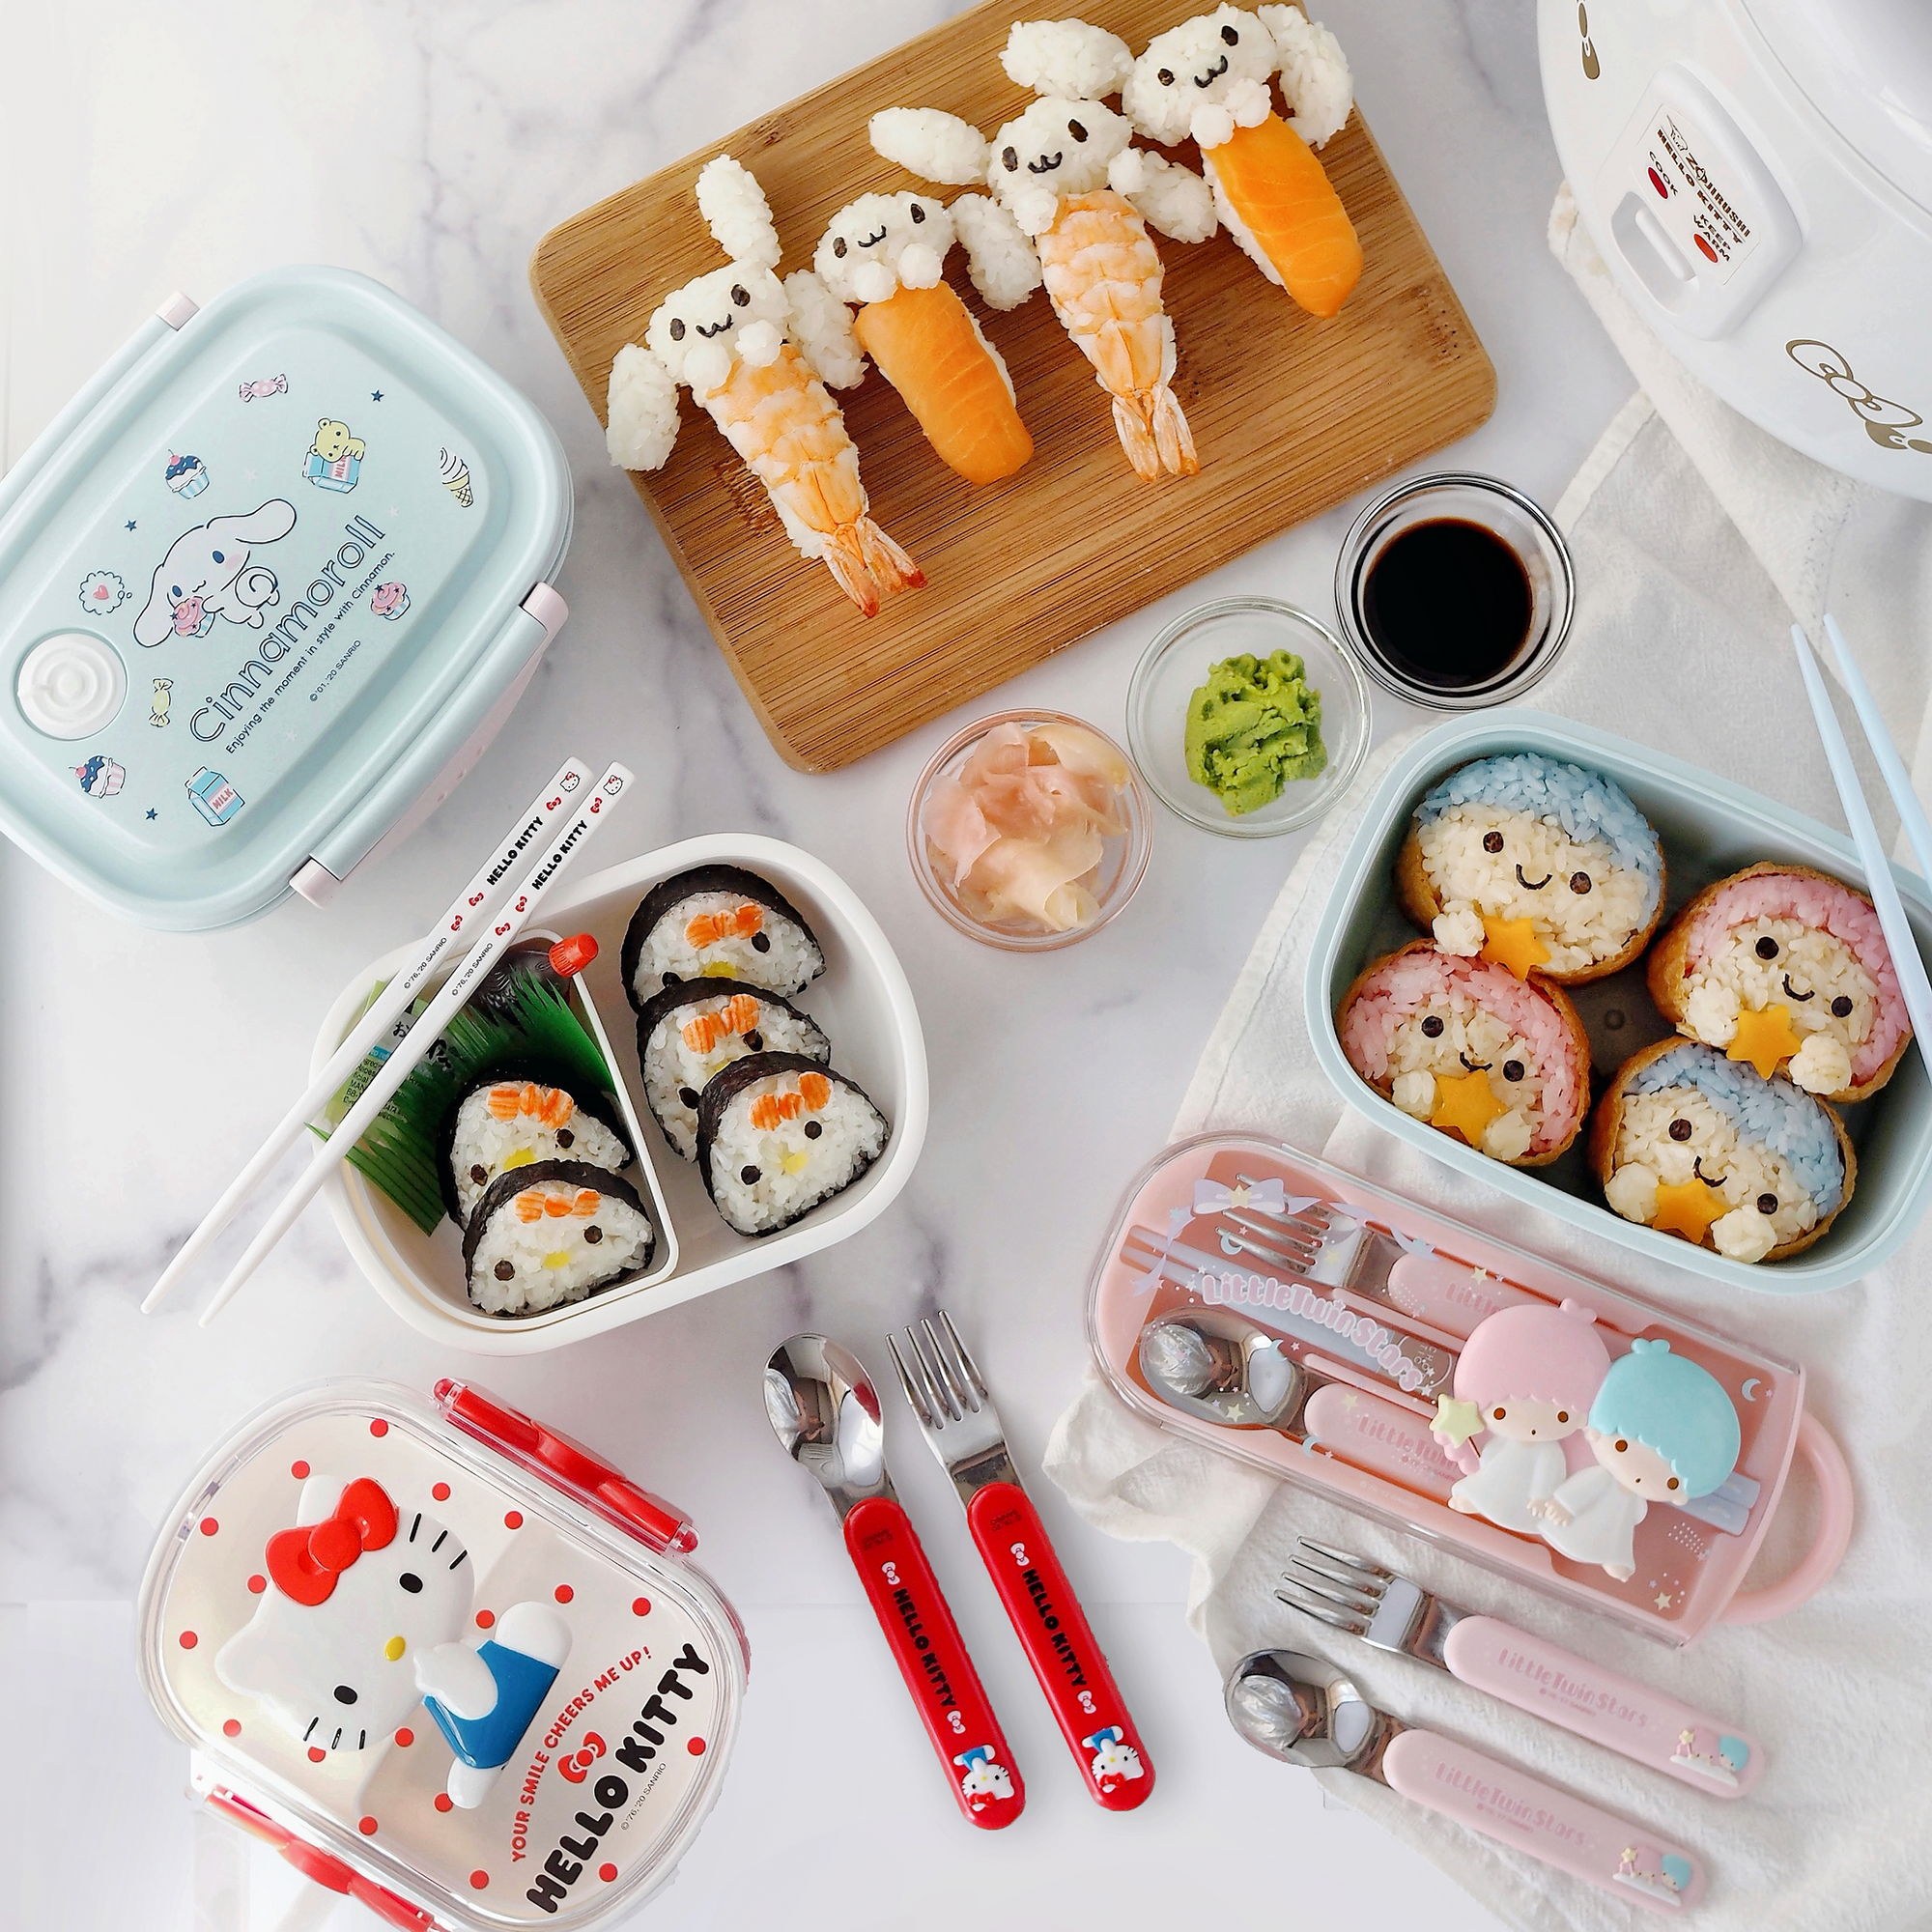 Happy International Sushi Day!